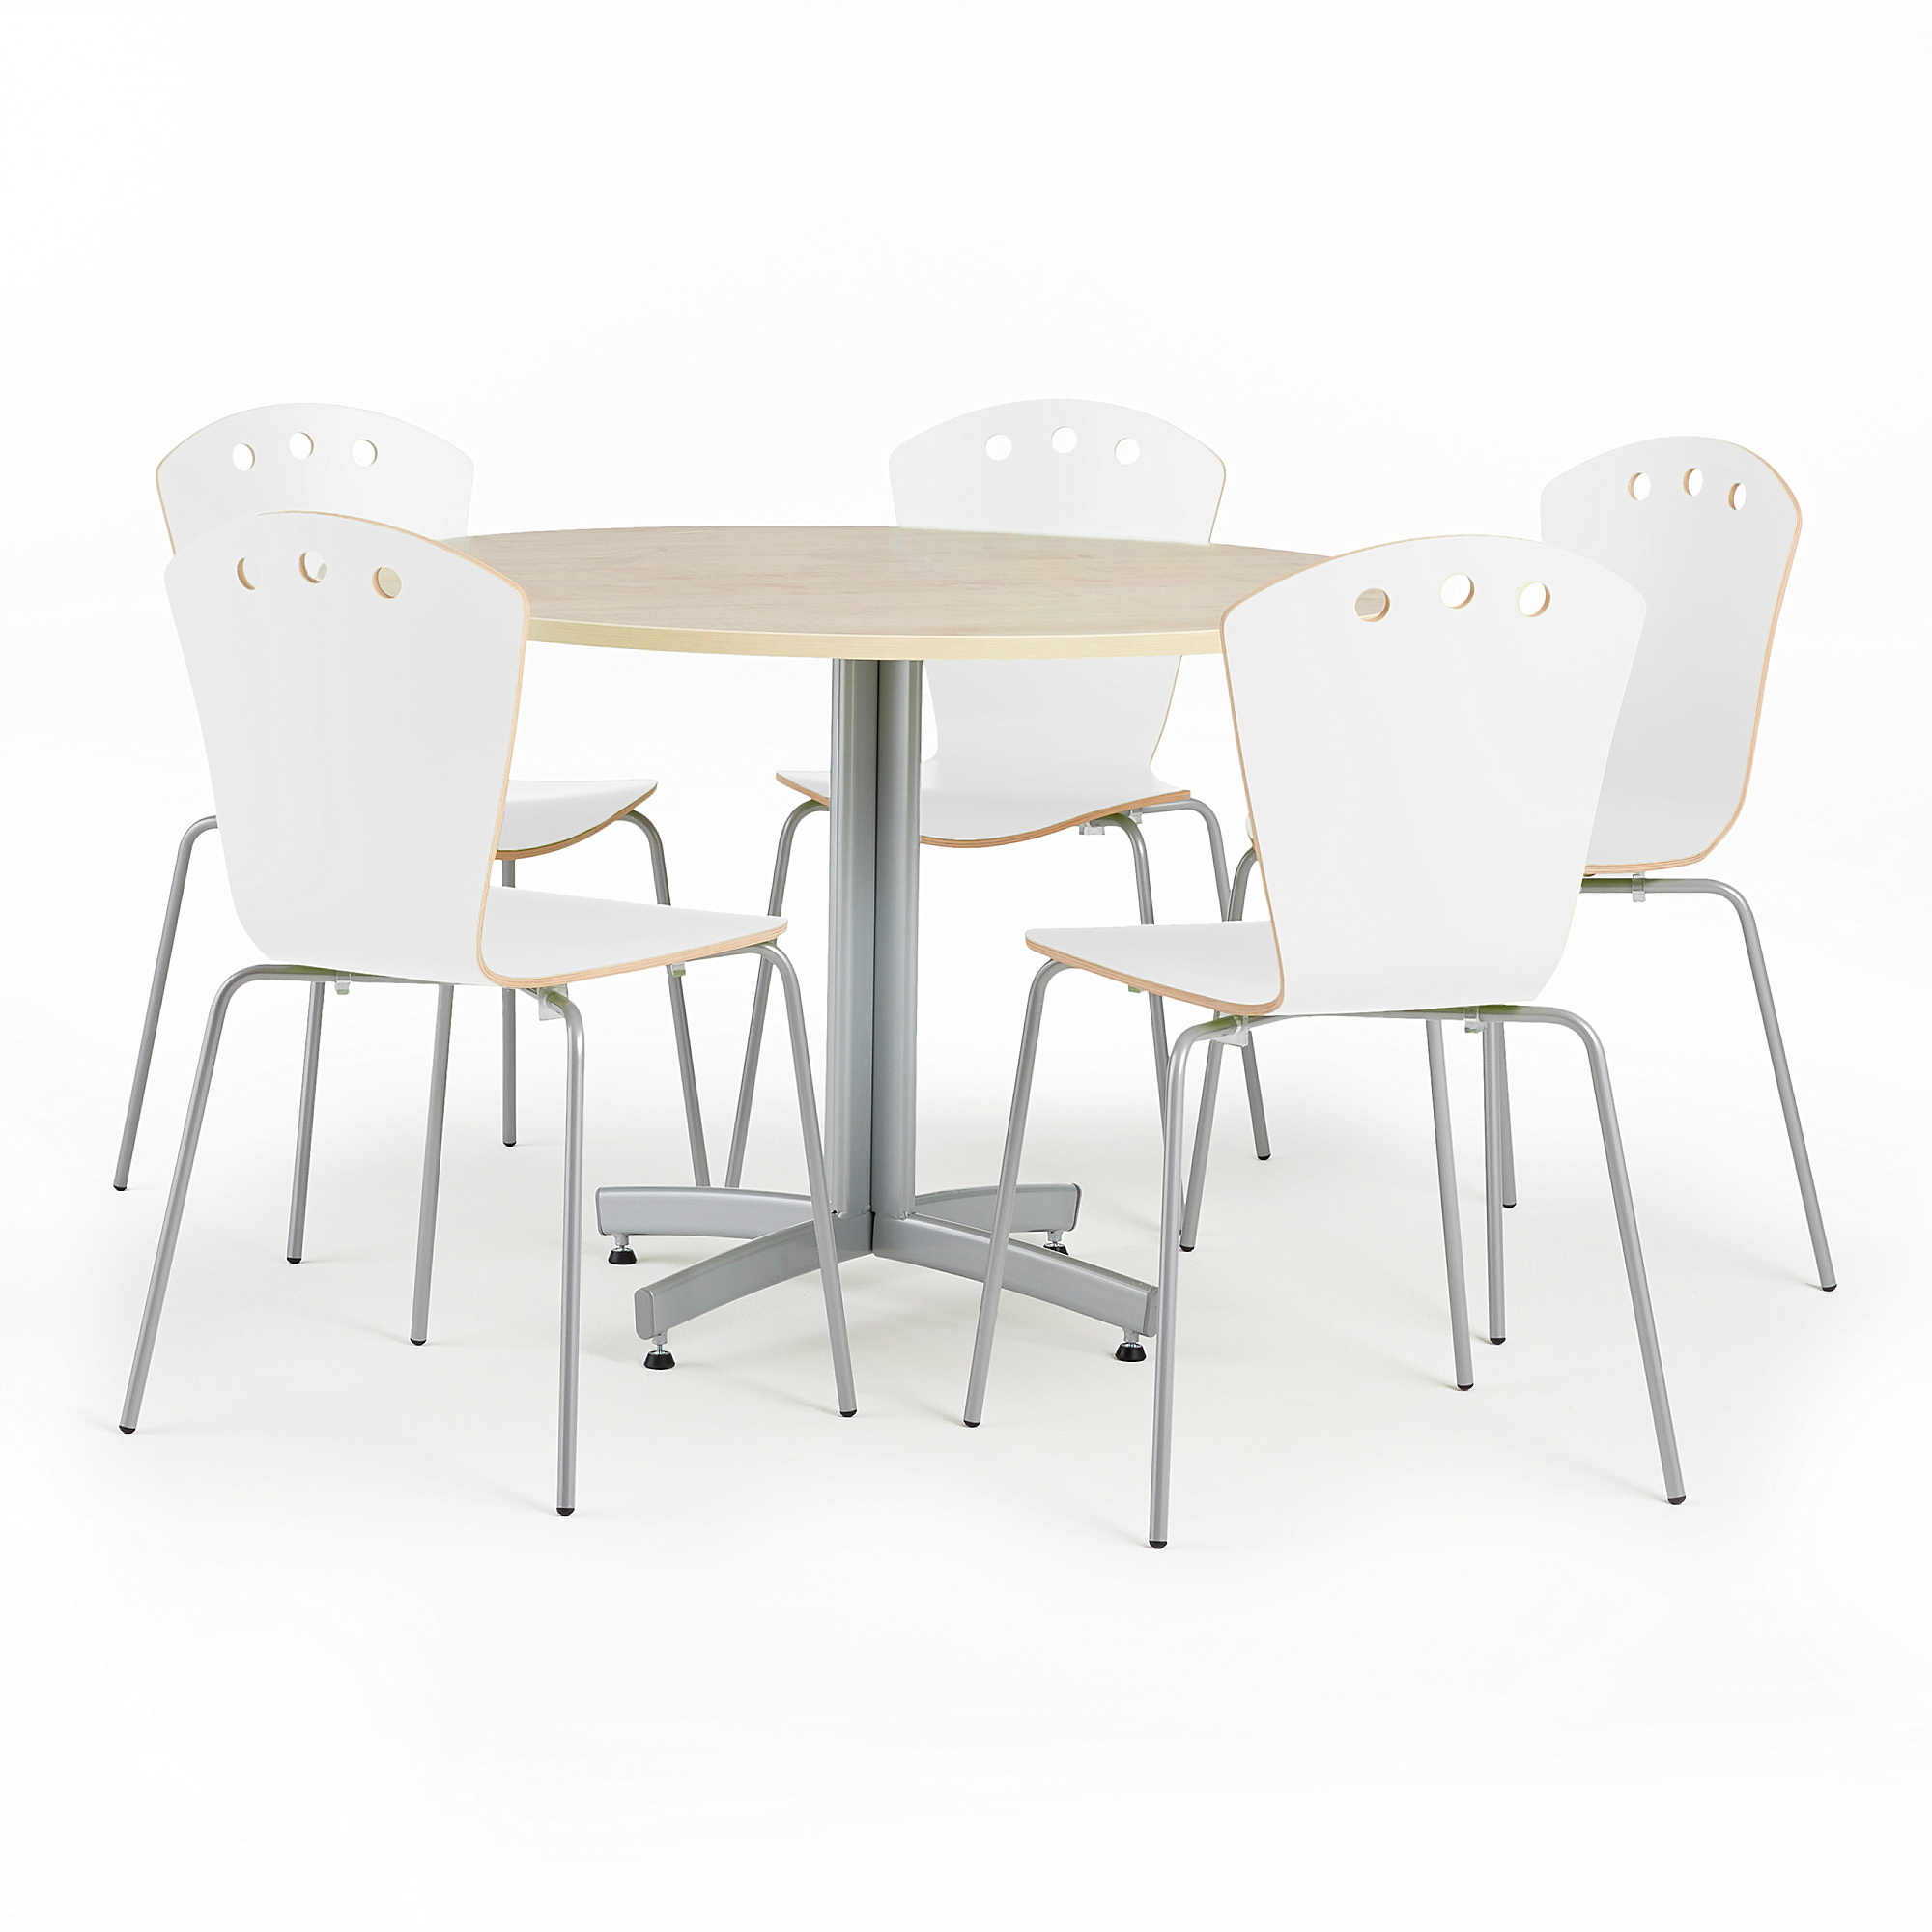 Jídelní sestava SANNA + ORLANDO, stůl Ø1100 mm, bříza + 5 židlí, bílé